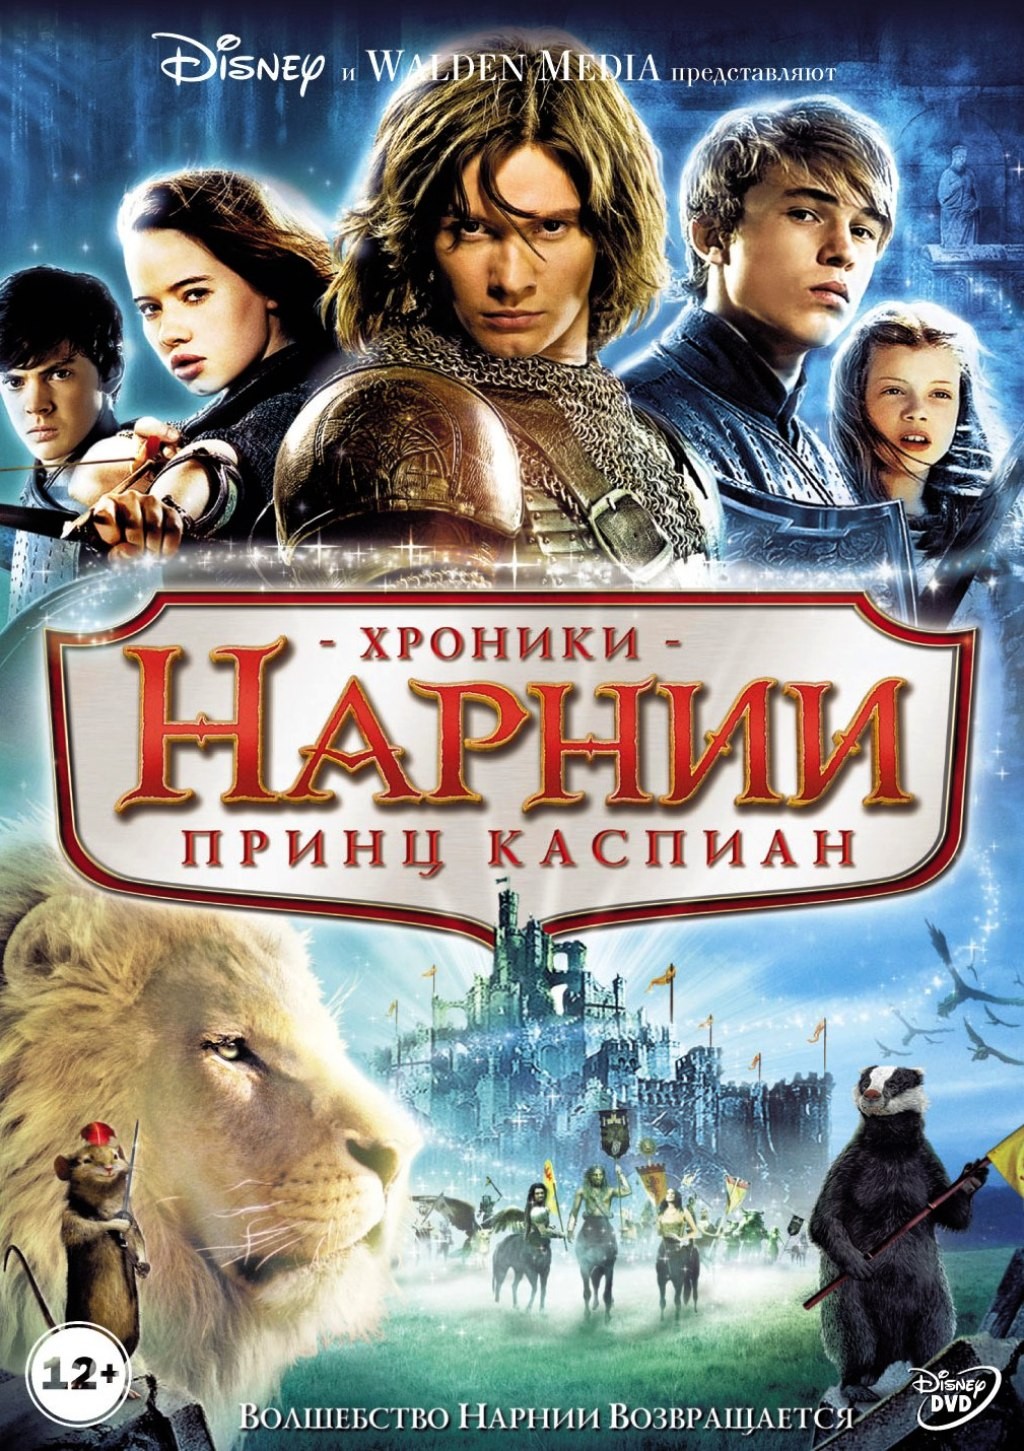 Хроники Нарнии: Принц Каспиан (региональное издание) (DVD)